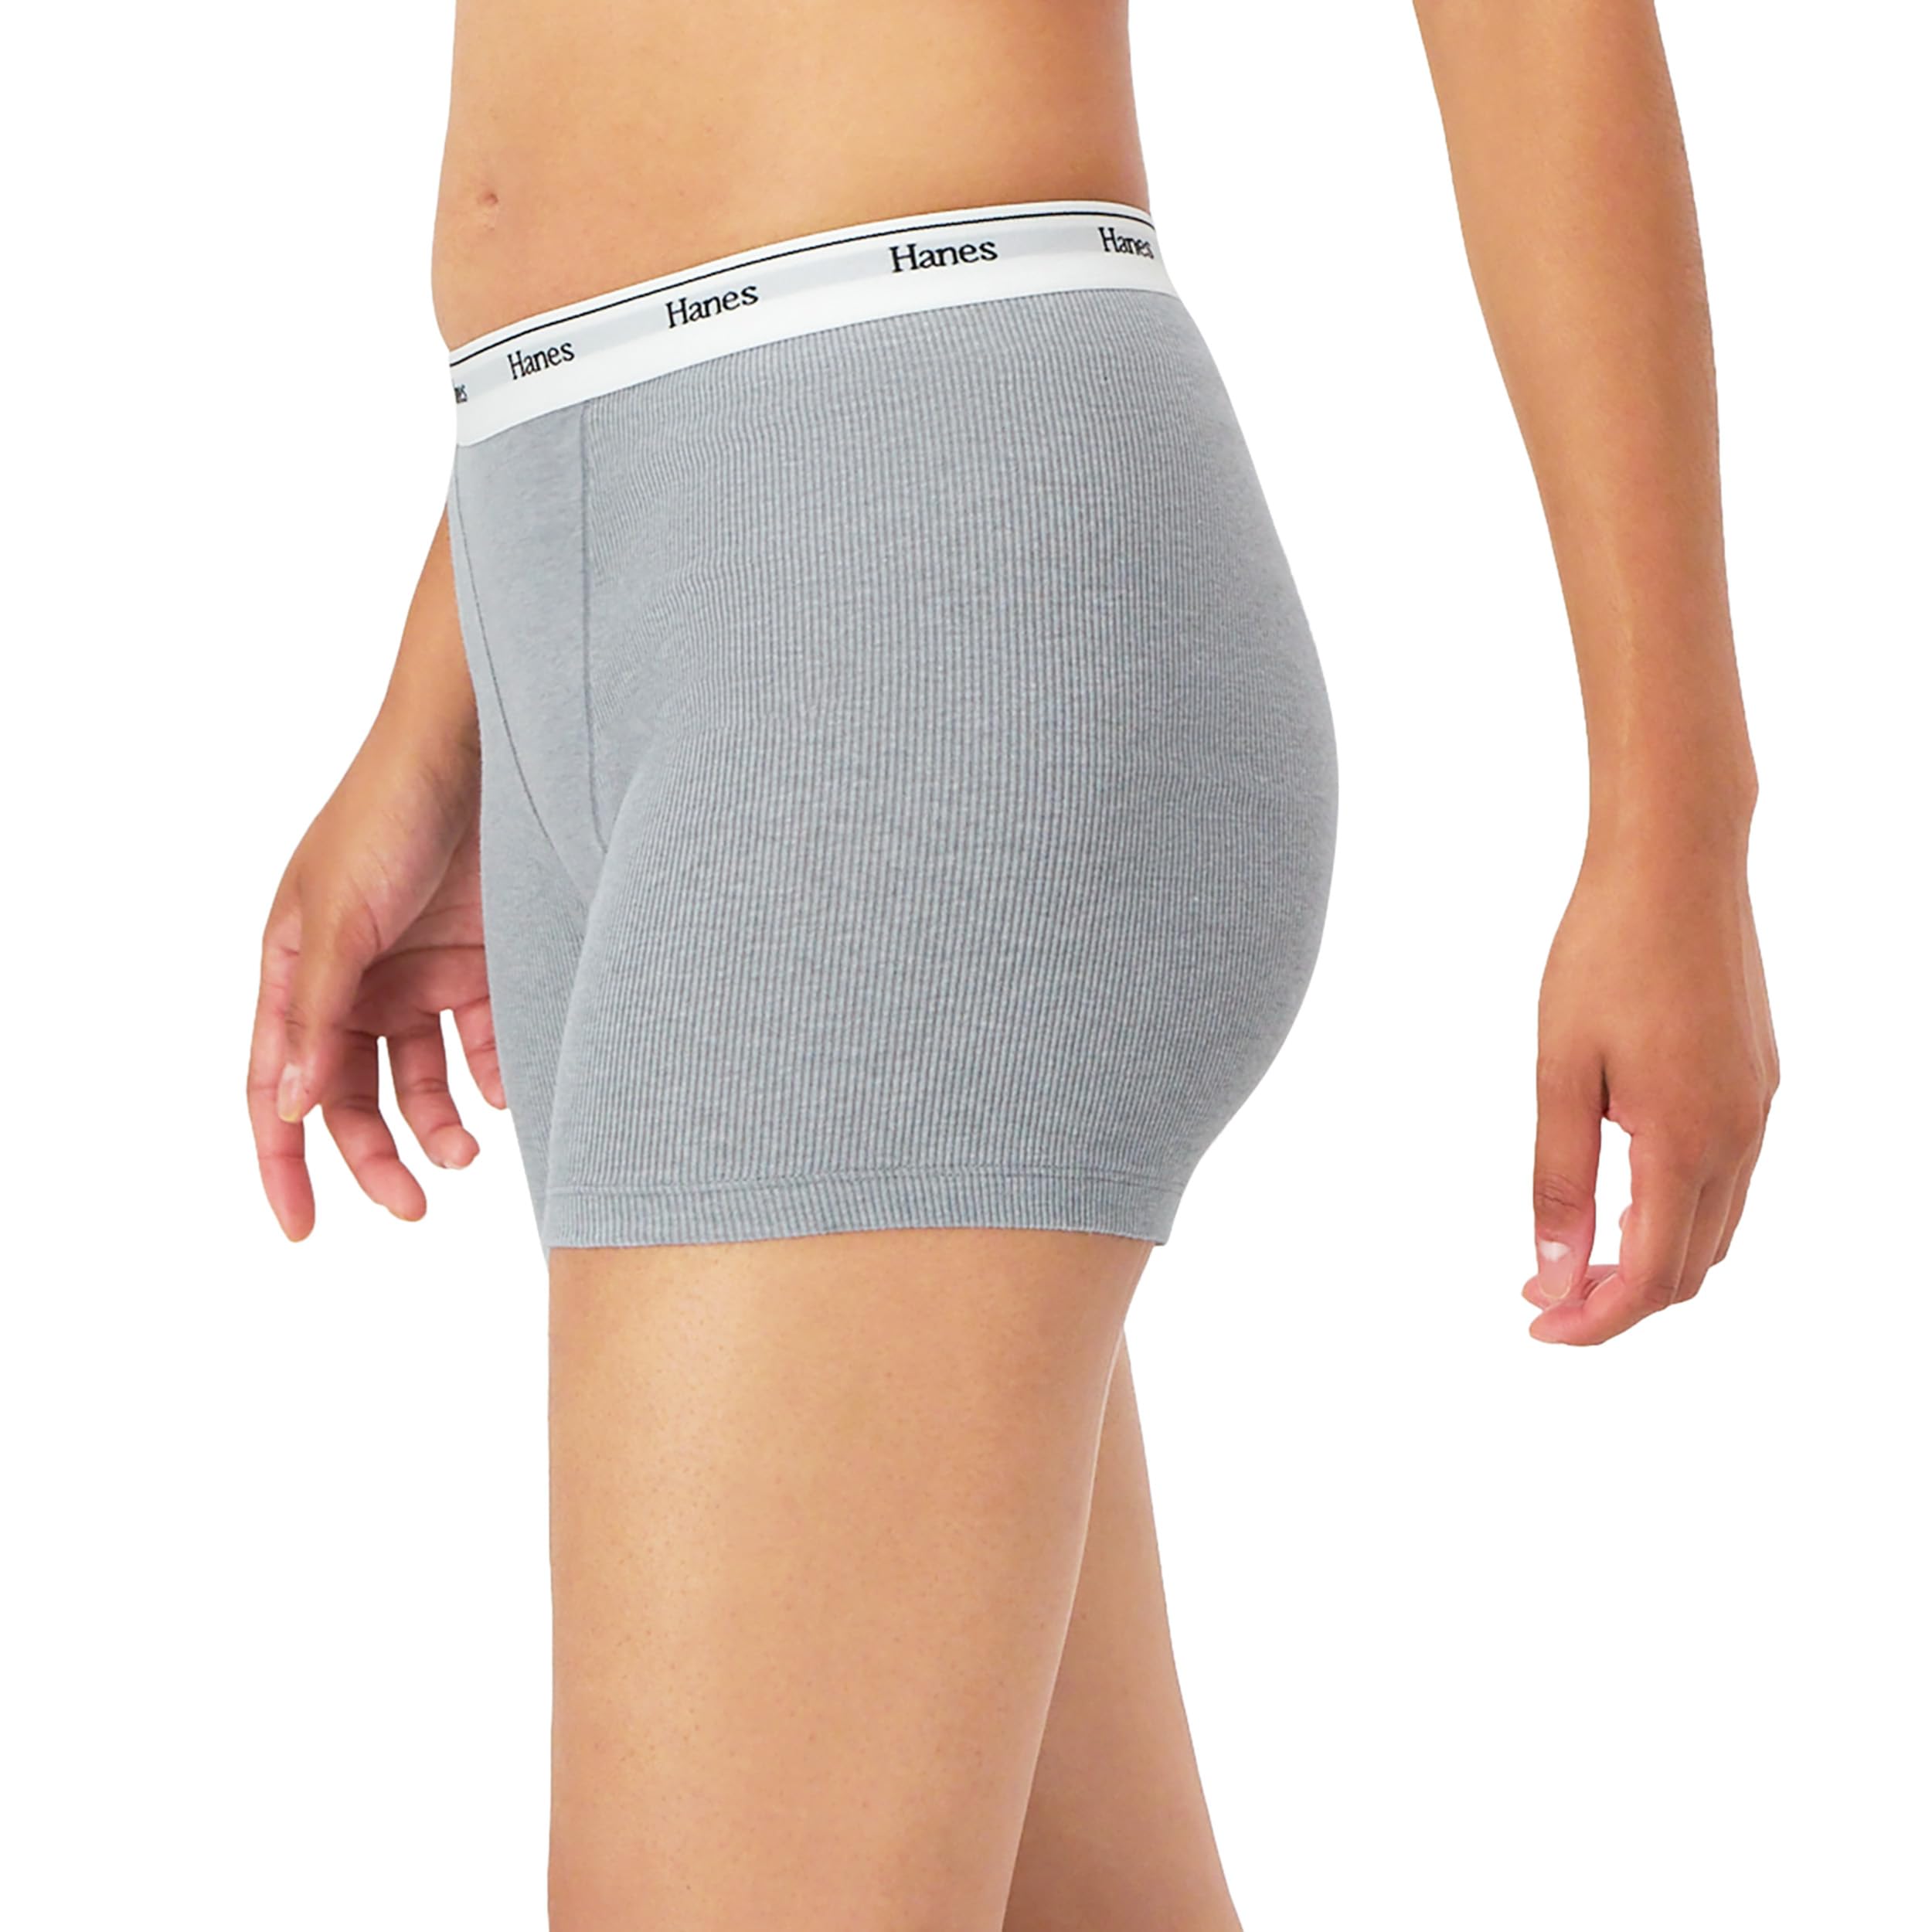 Hanes Women's Mid-Thigh Boxer Brief Pack, Stretch Cotton Underwear, 4-Pack